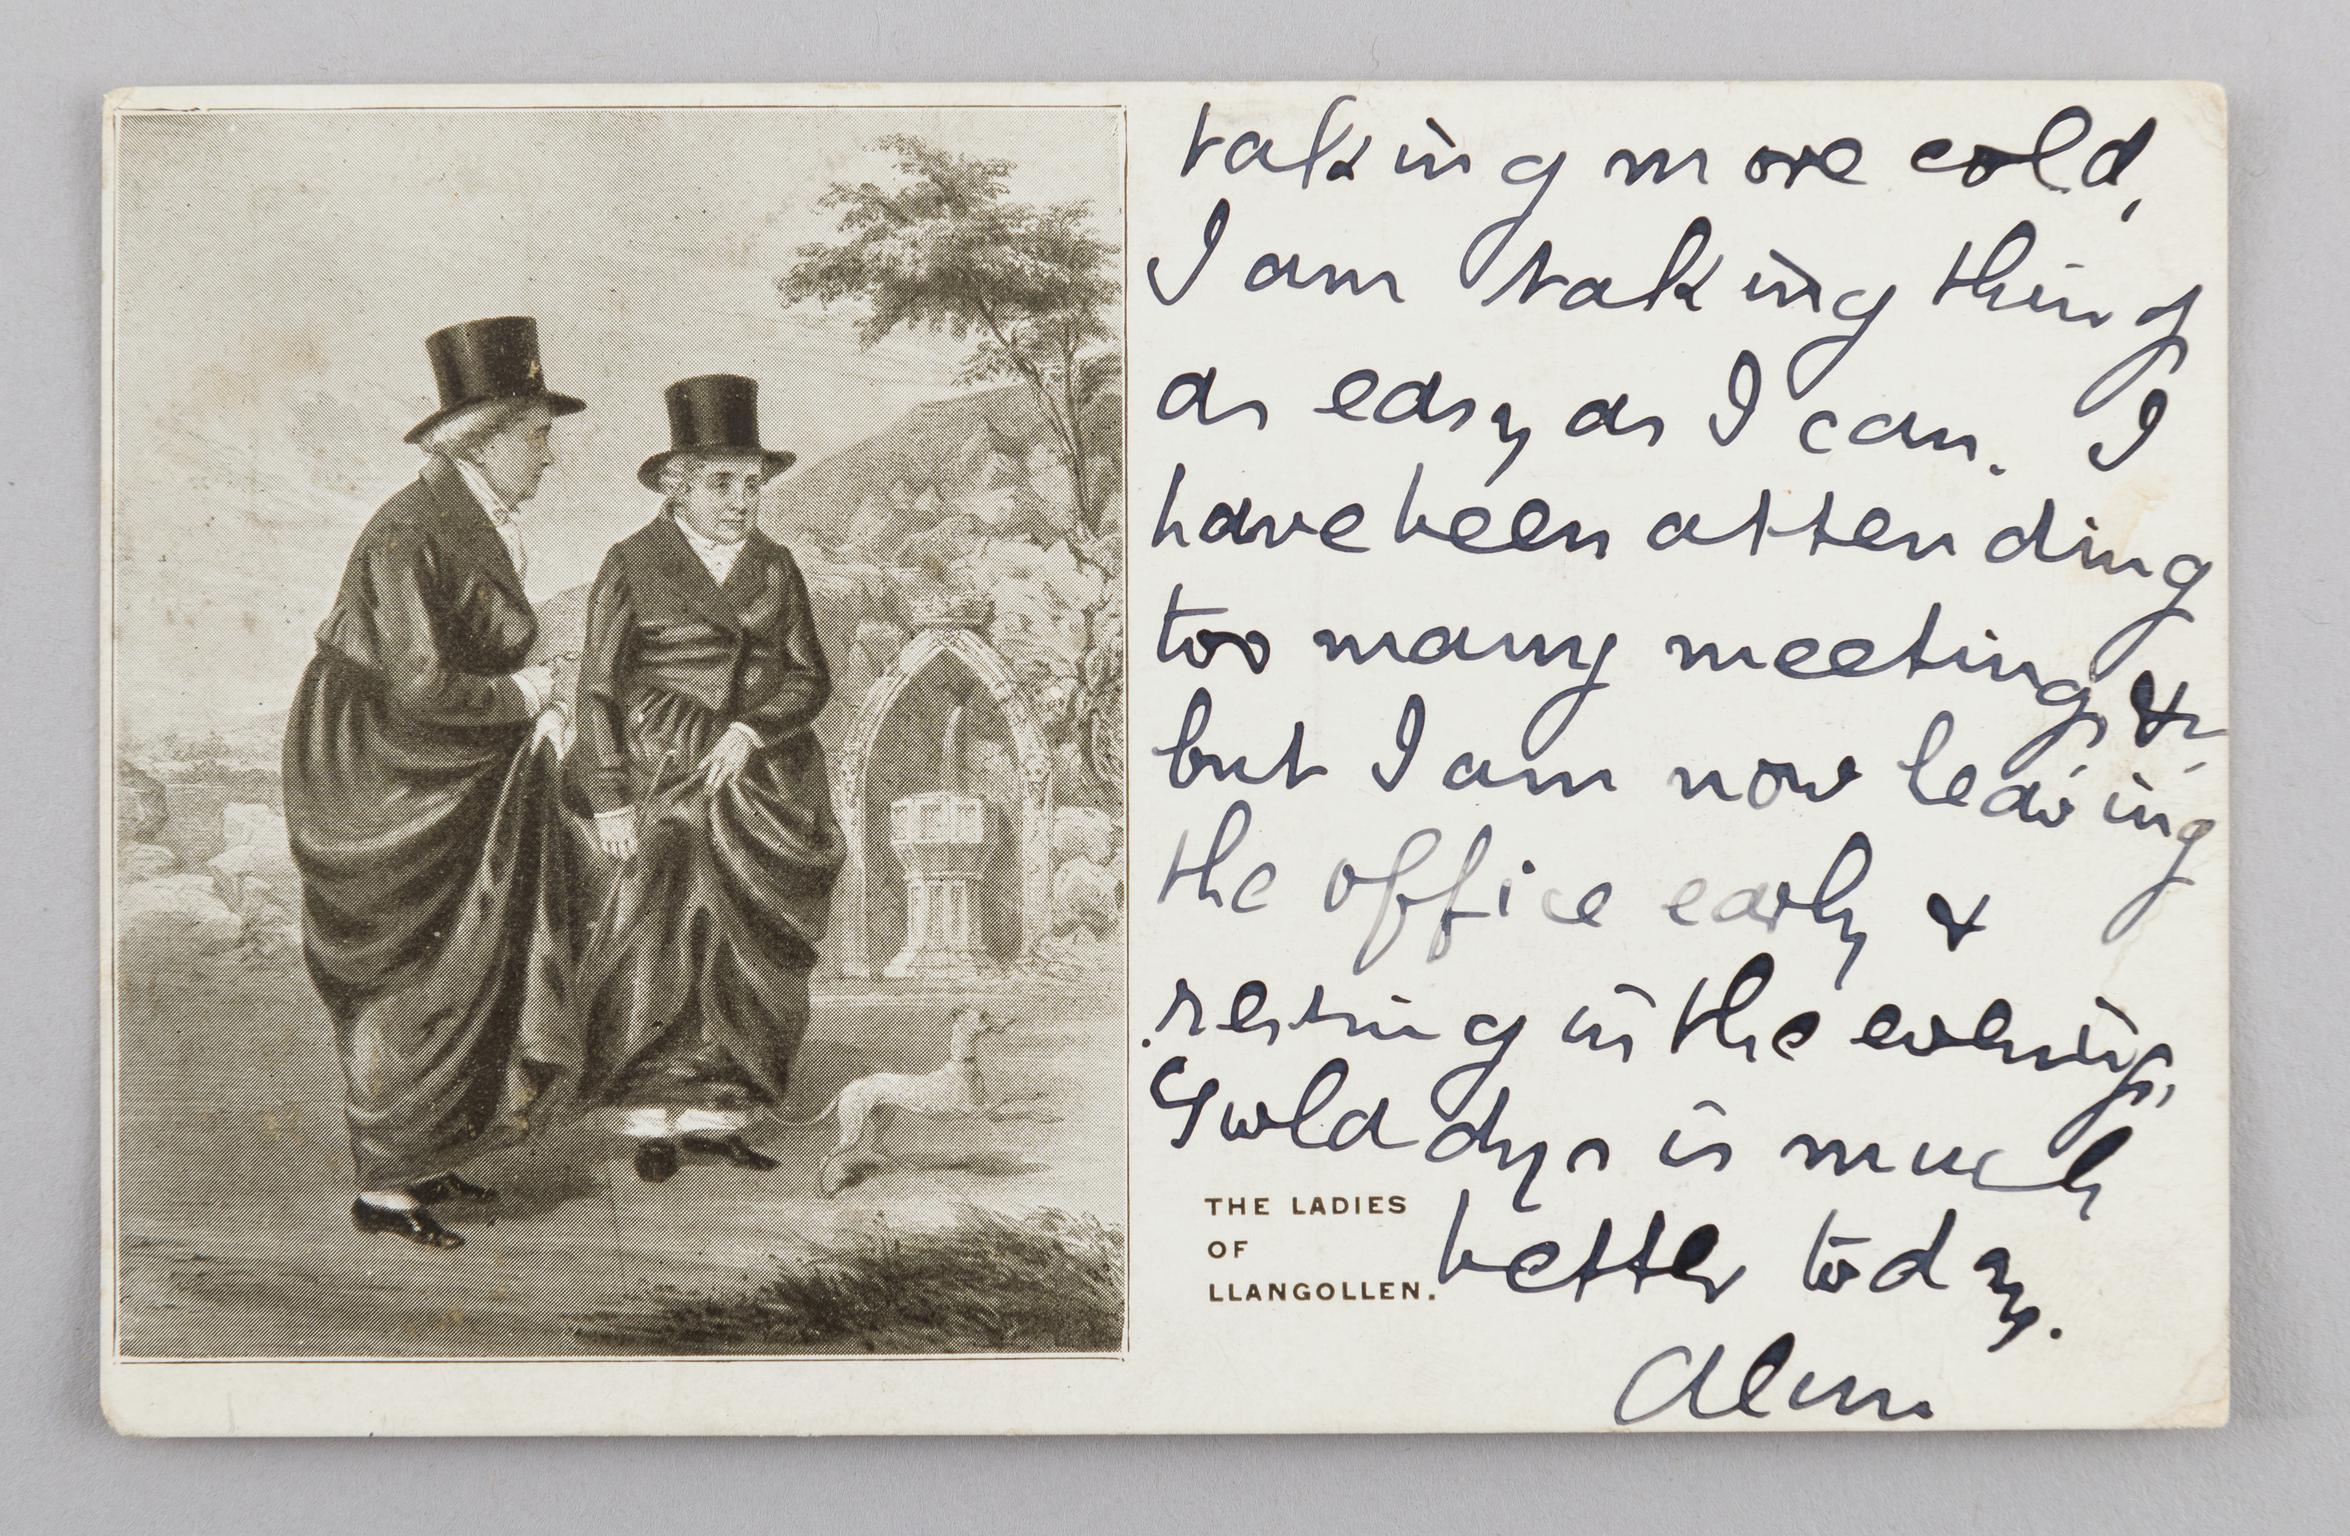 The Ladies of Llangollen, postcard